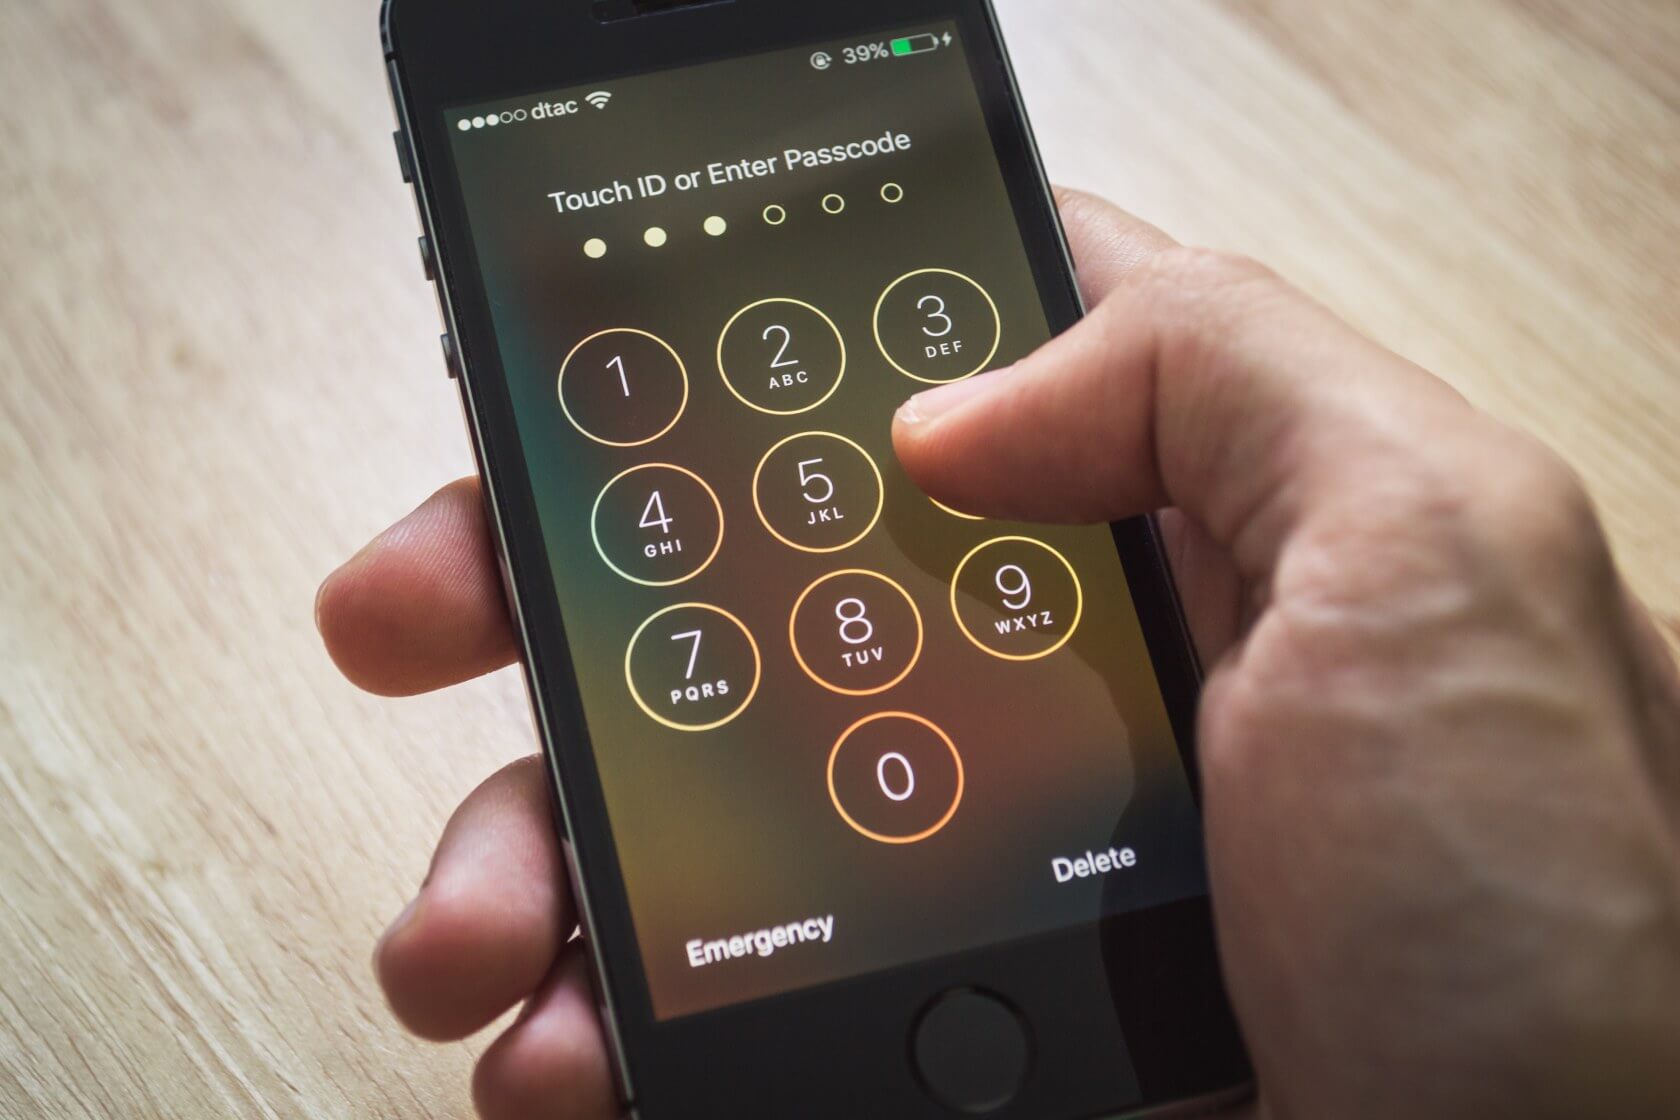 تحديث iOS 11.4.1 يحد من إمكانية إيقاف الخدمة عن طريق USB والعديد من مشكلات الأمان